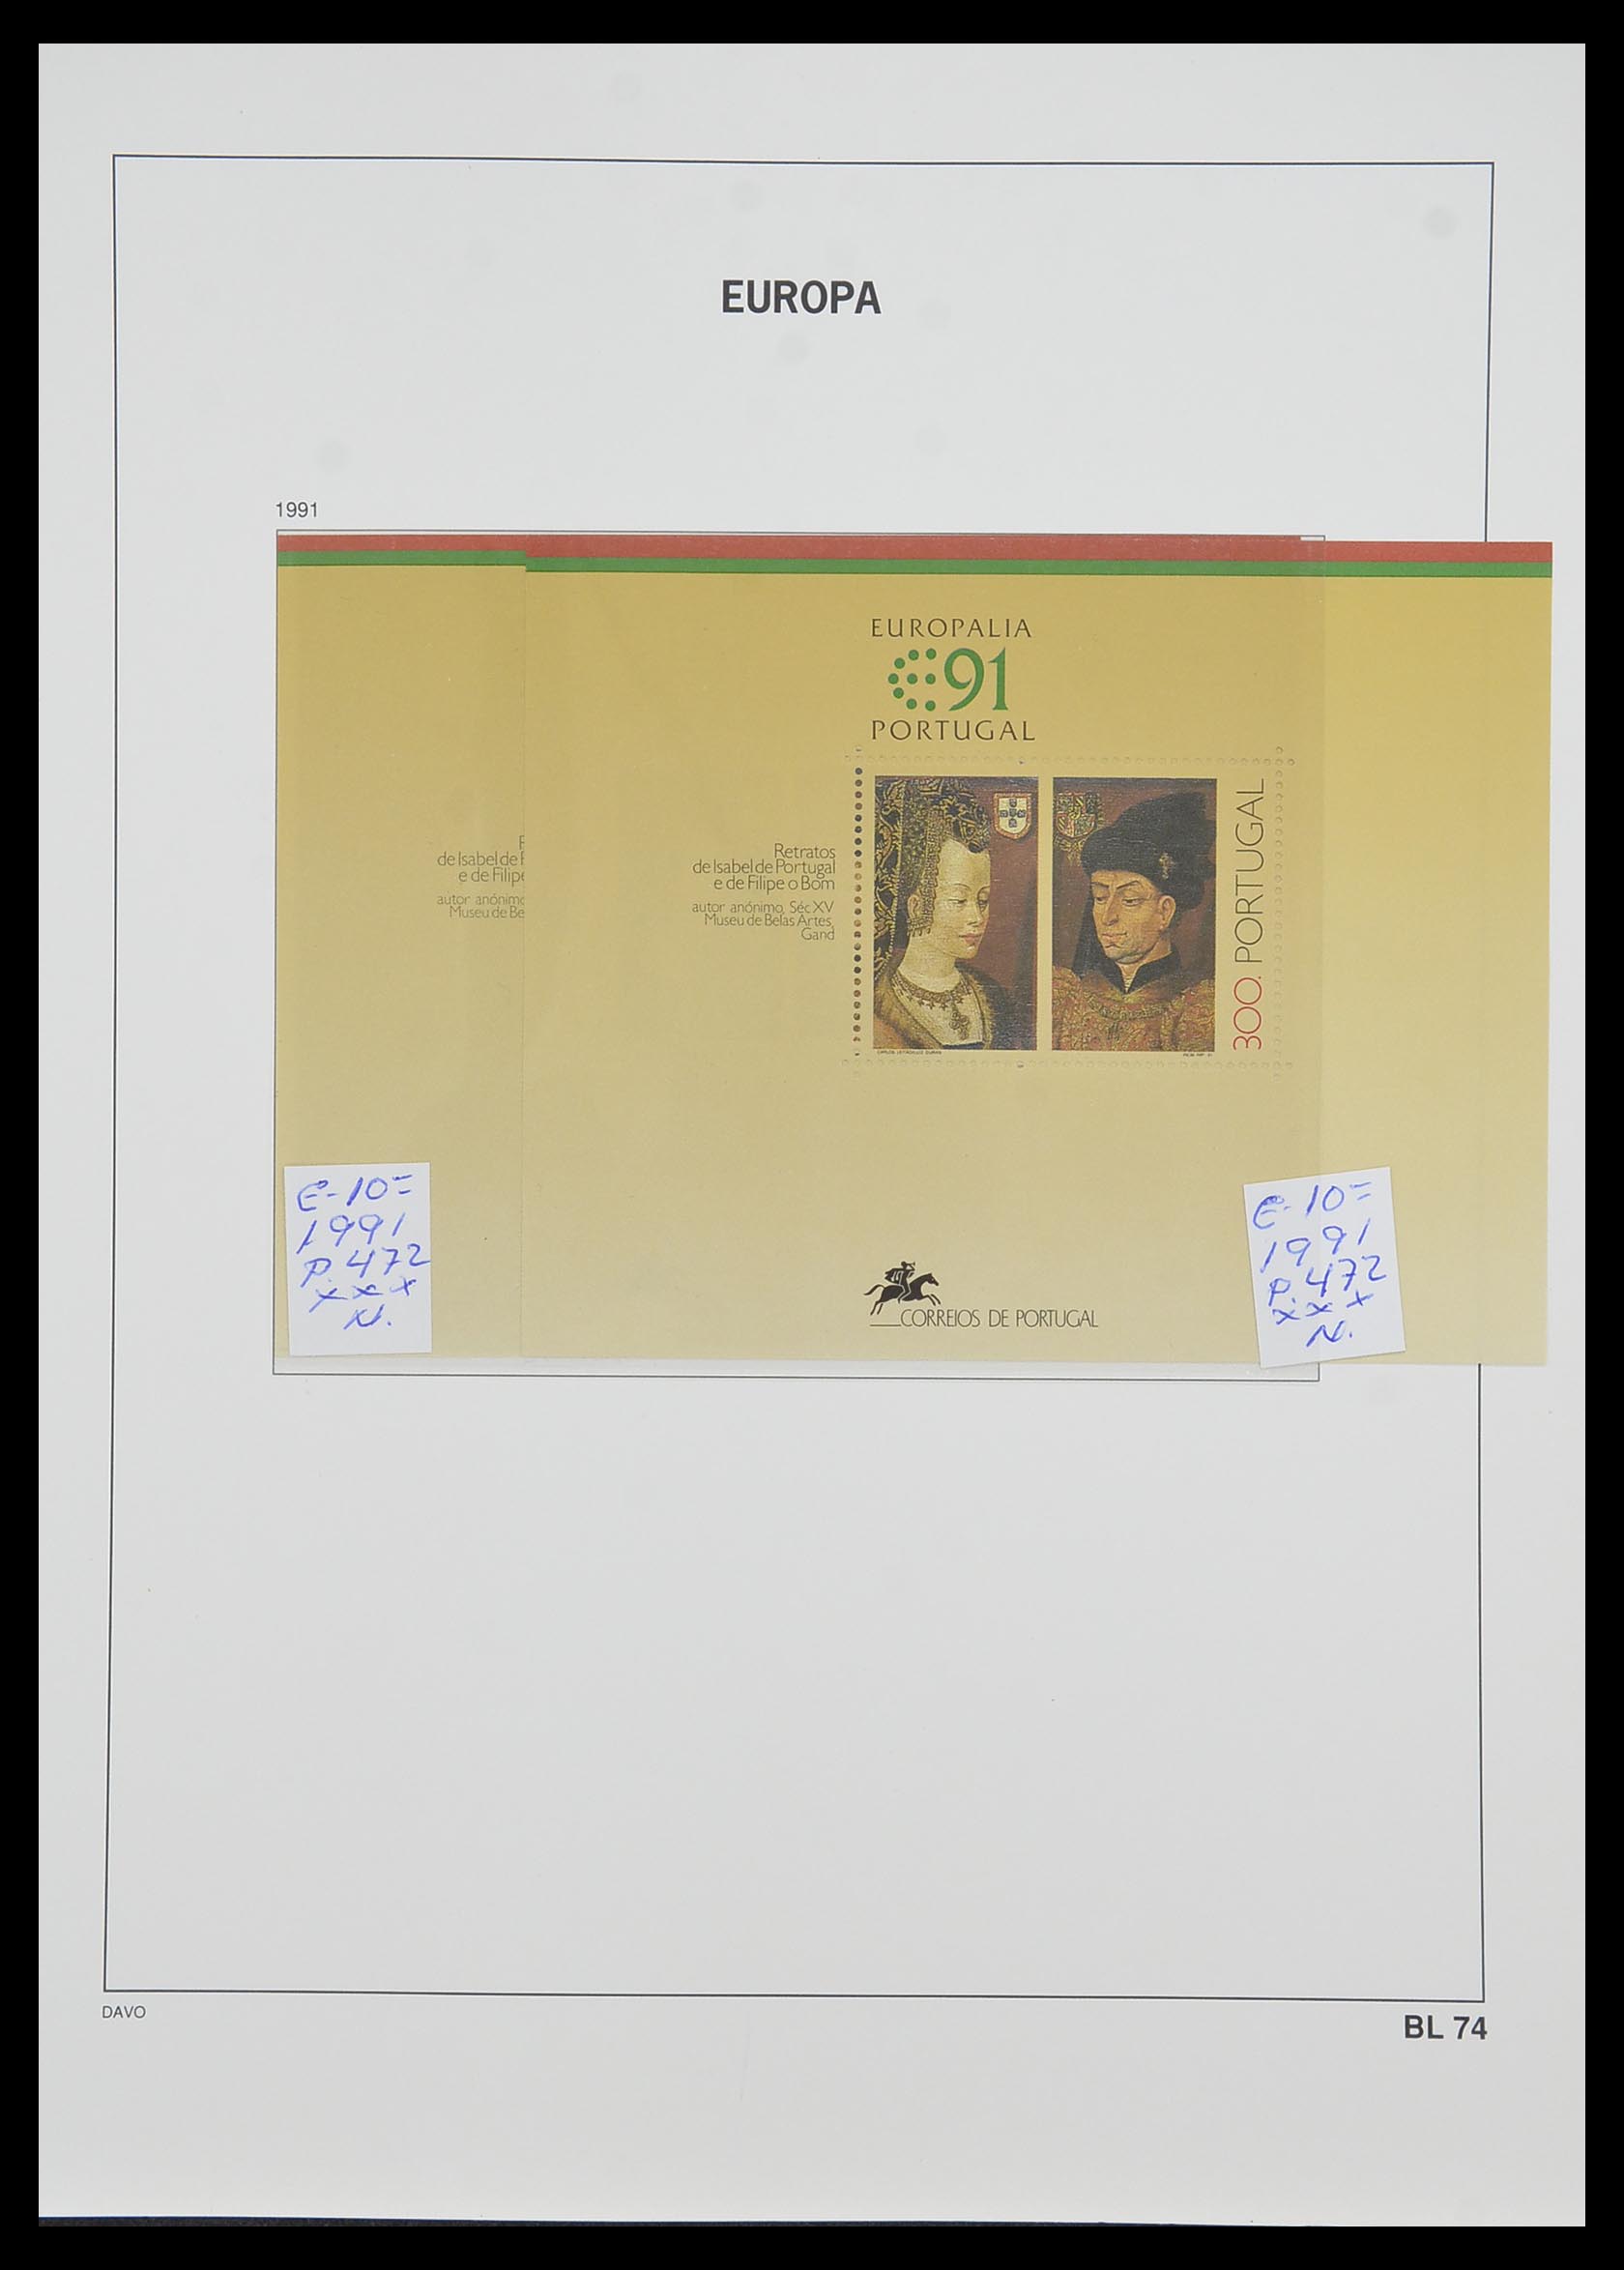 33985 066 - Stamp collection 33985 Europa CEPT souvenir sheets 1974-2014.